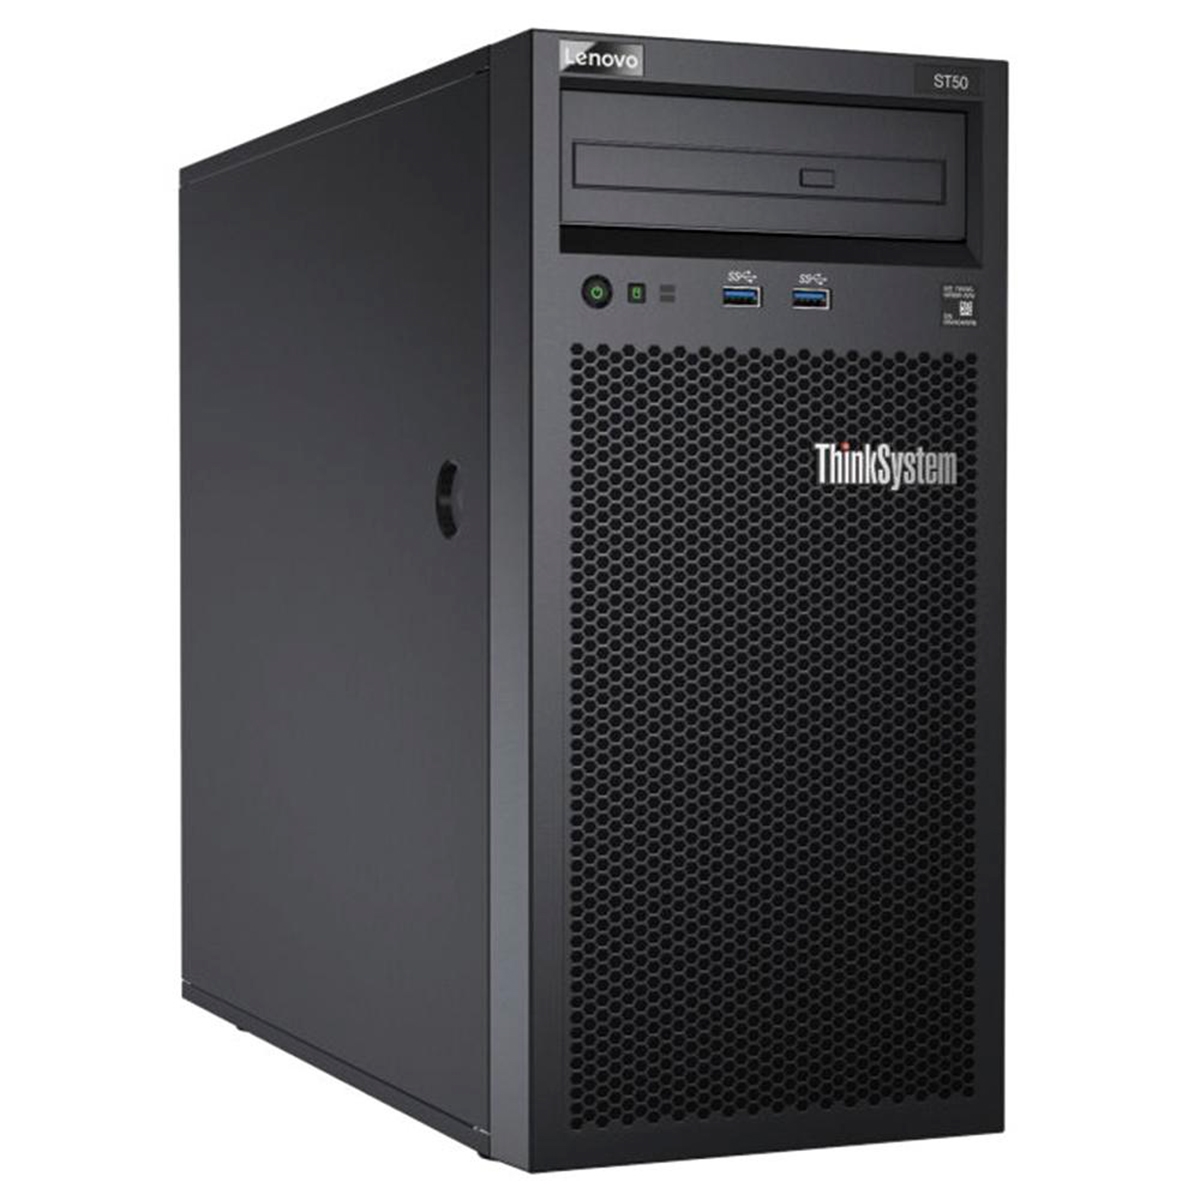 Servidor Lenovo ThinkSystem ST50 - Intel Xeon E-2104G, 16GB, HD 1TB + SSD 120GB, DVD, USB 3.0, FreeDos - 7Y48A00LBR